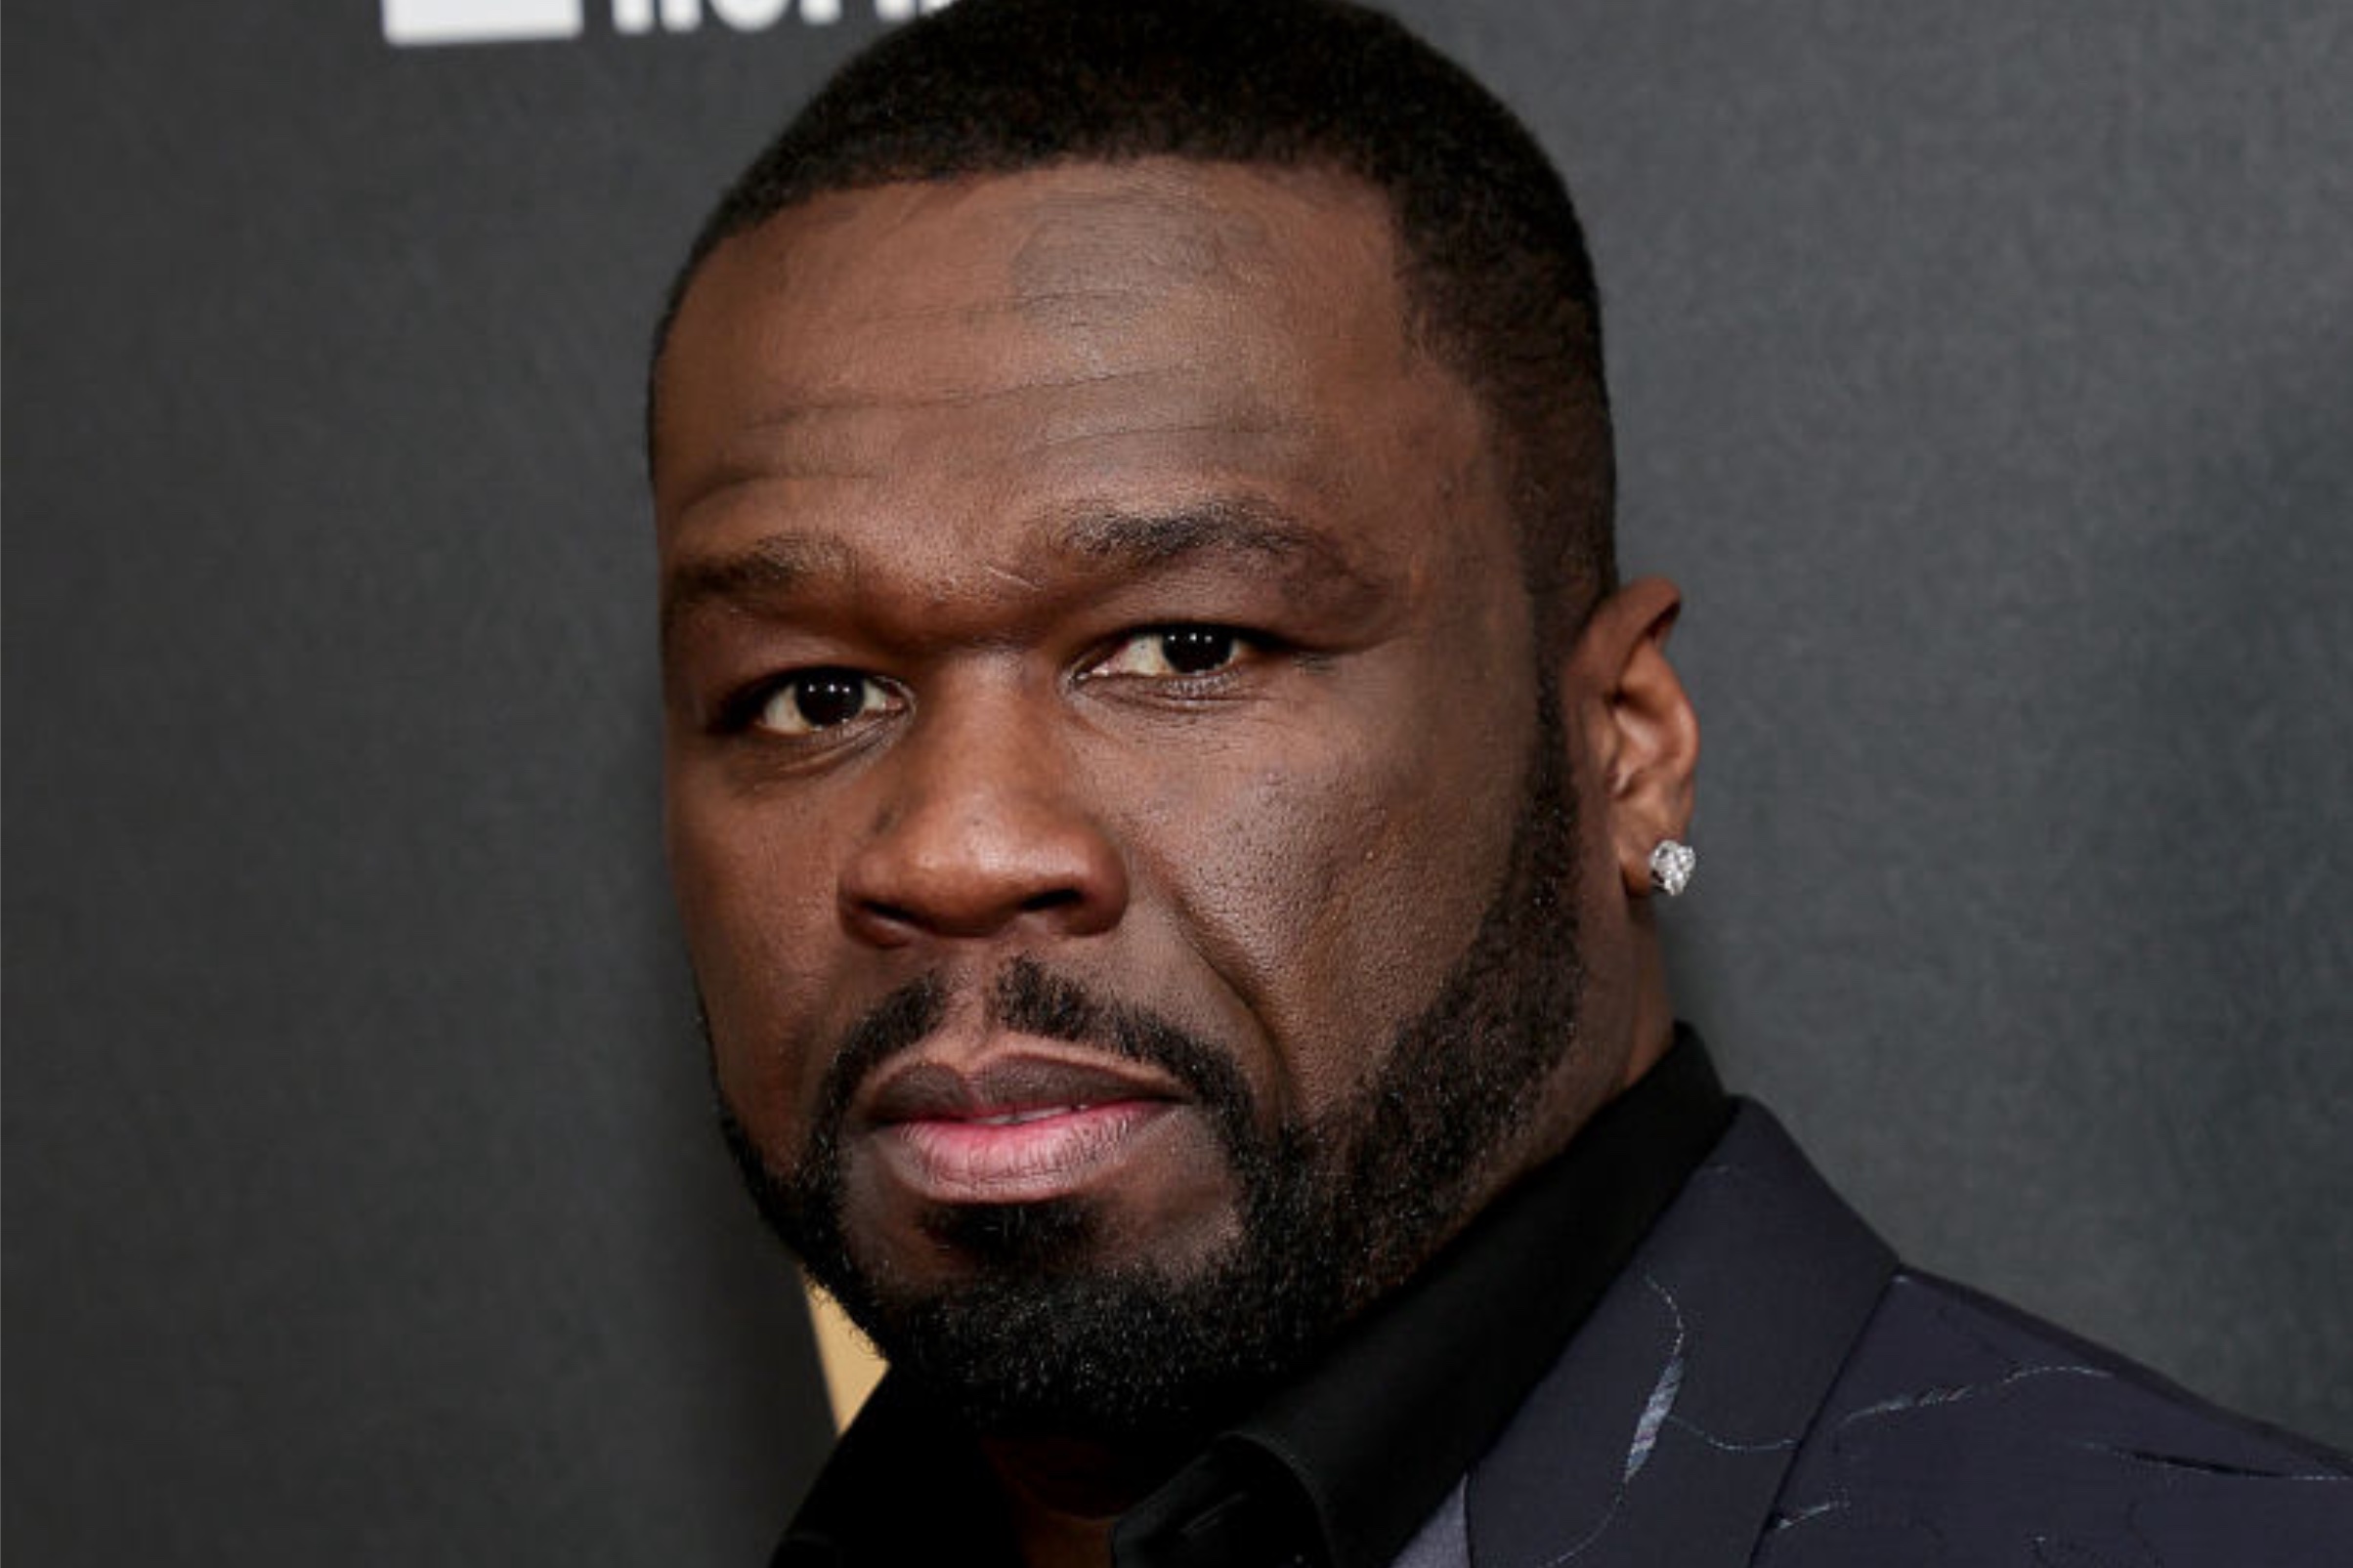 50 Cent causa revuelo por el desaire de los NAACP Image Awards